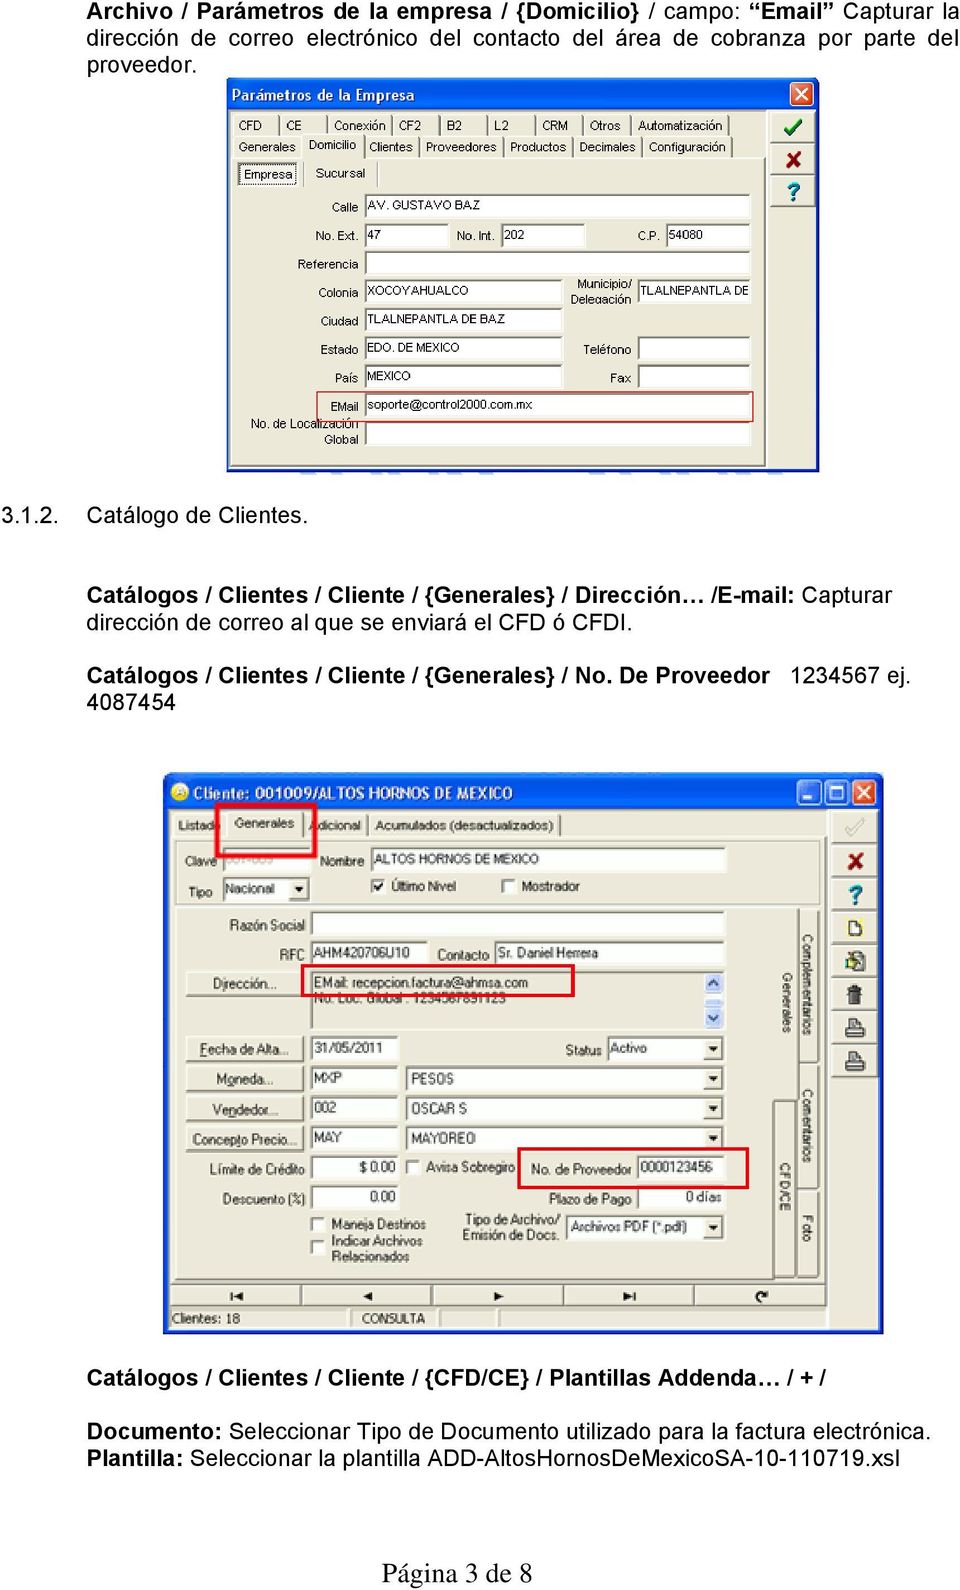 Catálogos / Clientes / Cliente / {Generales} / Dirección /E-mail: Capturar dirección de correo al que se enviará el CFD ó CFDI.